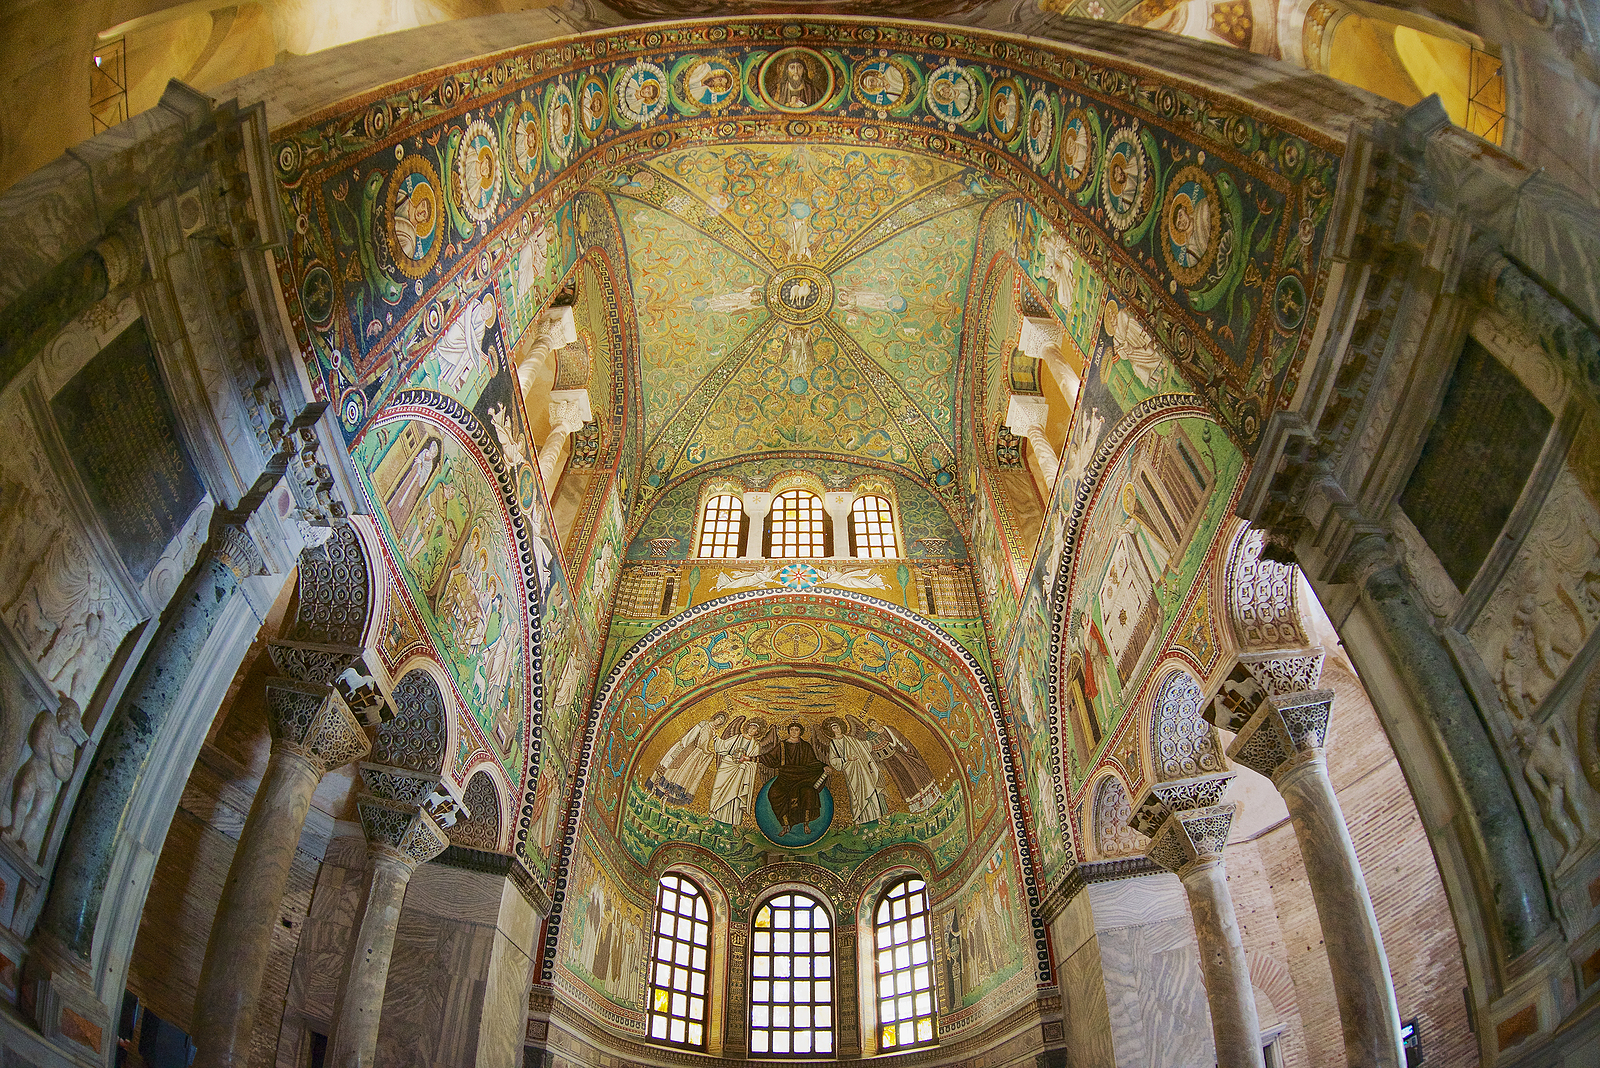 Discover Ravenna, Italy's City of Mosaics